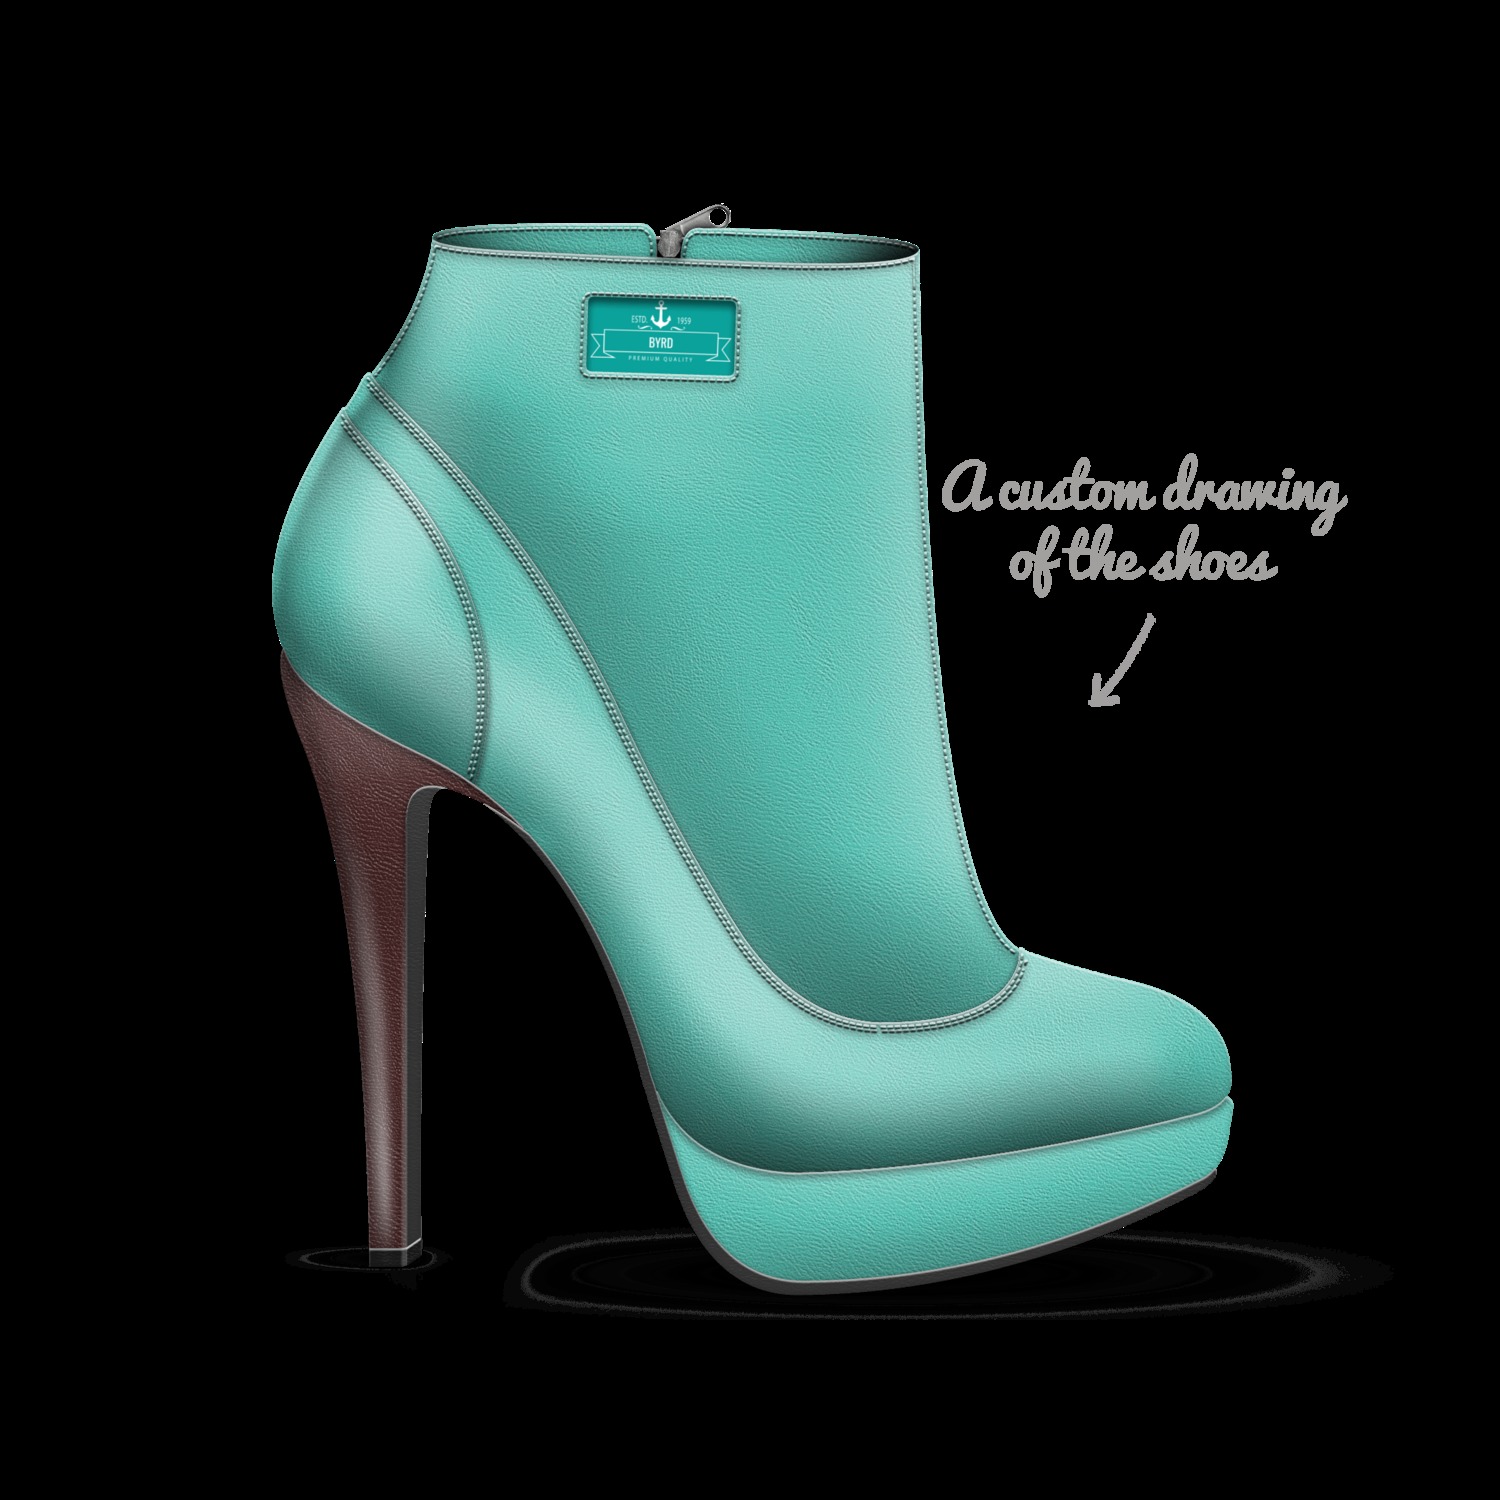 Byrd | A Custom Shoe concept by Angela 